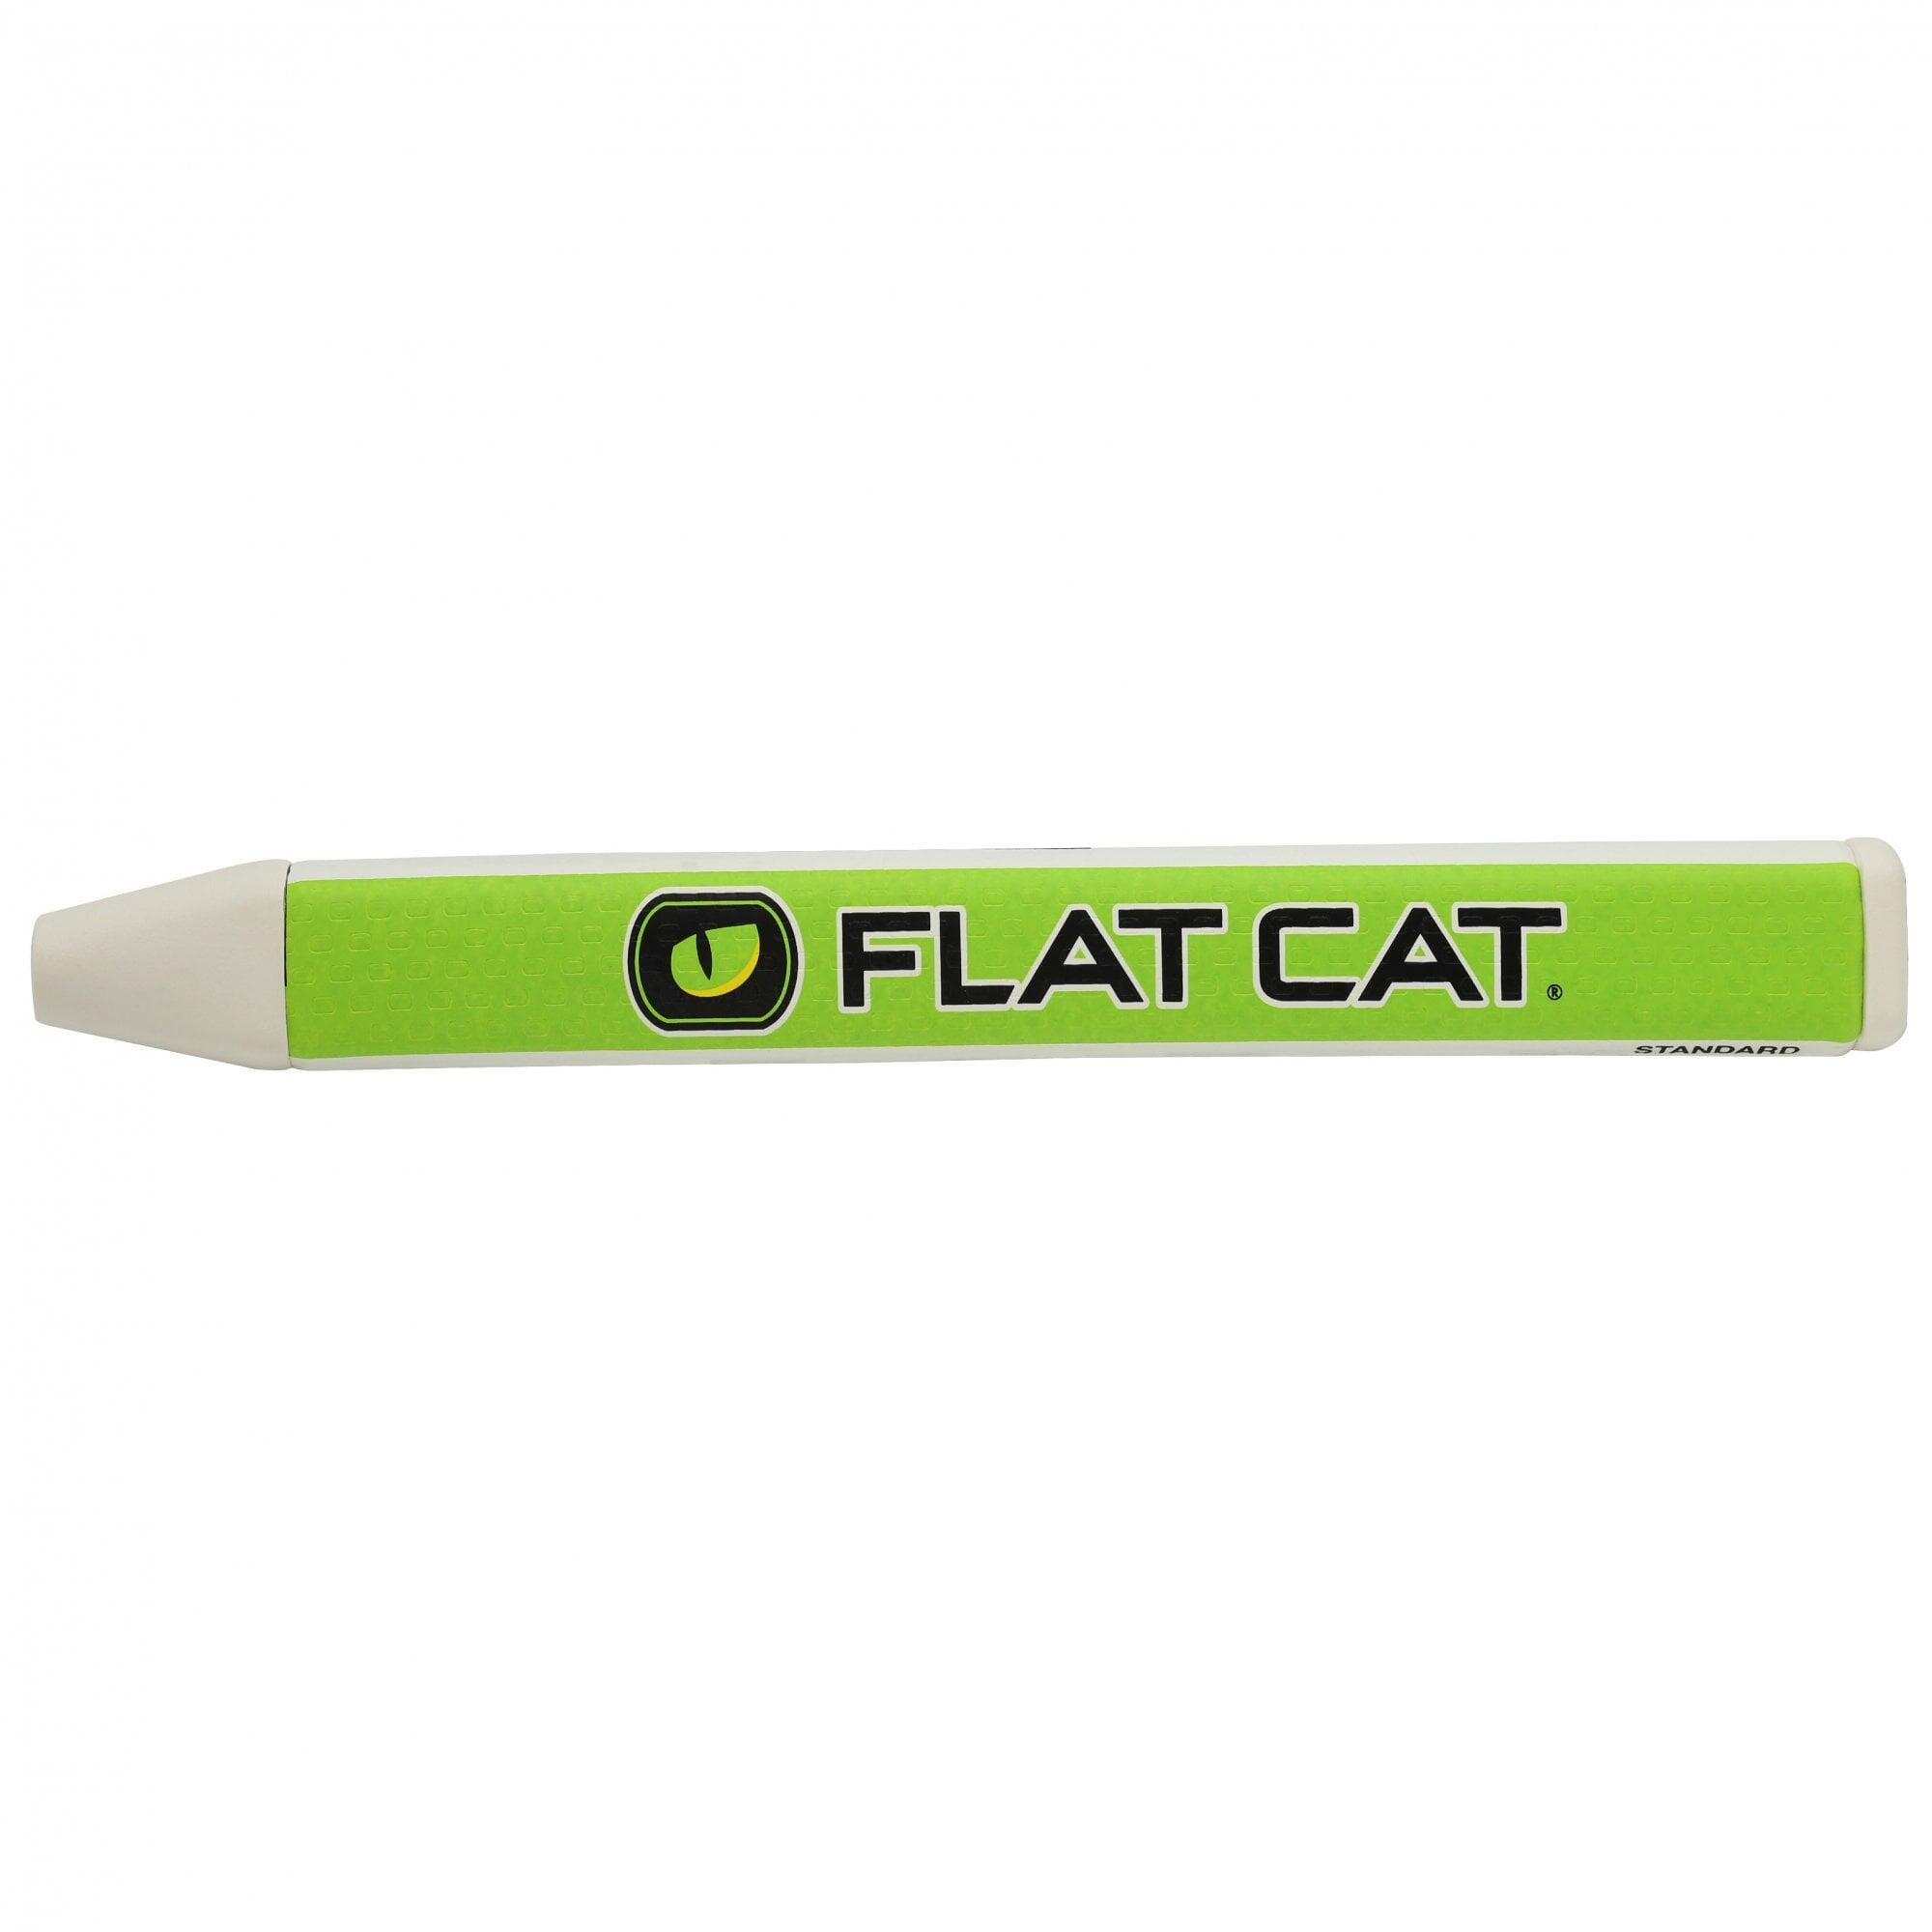 Flat Cat Original  Putter Grip - Standard 1/2